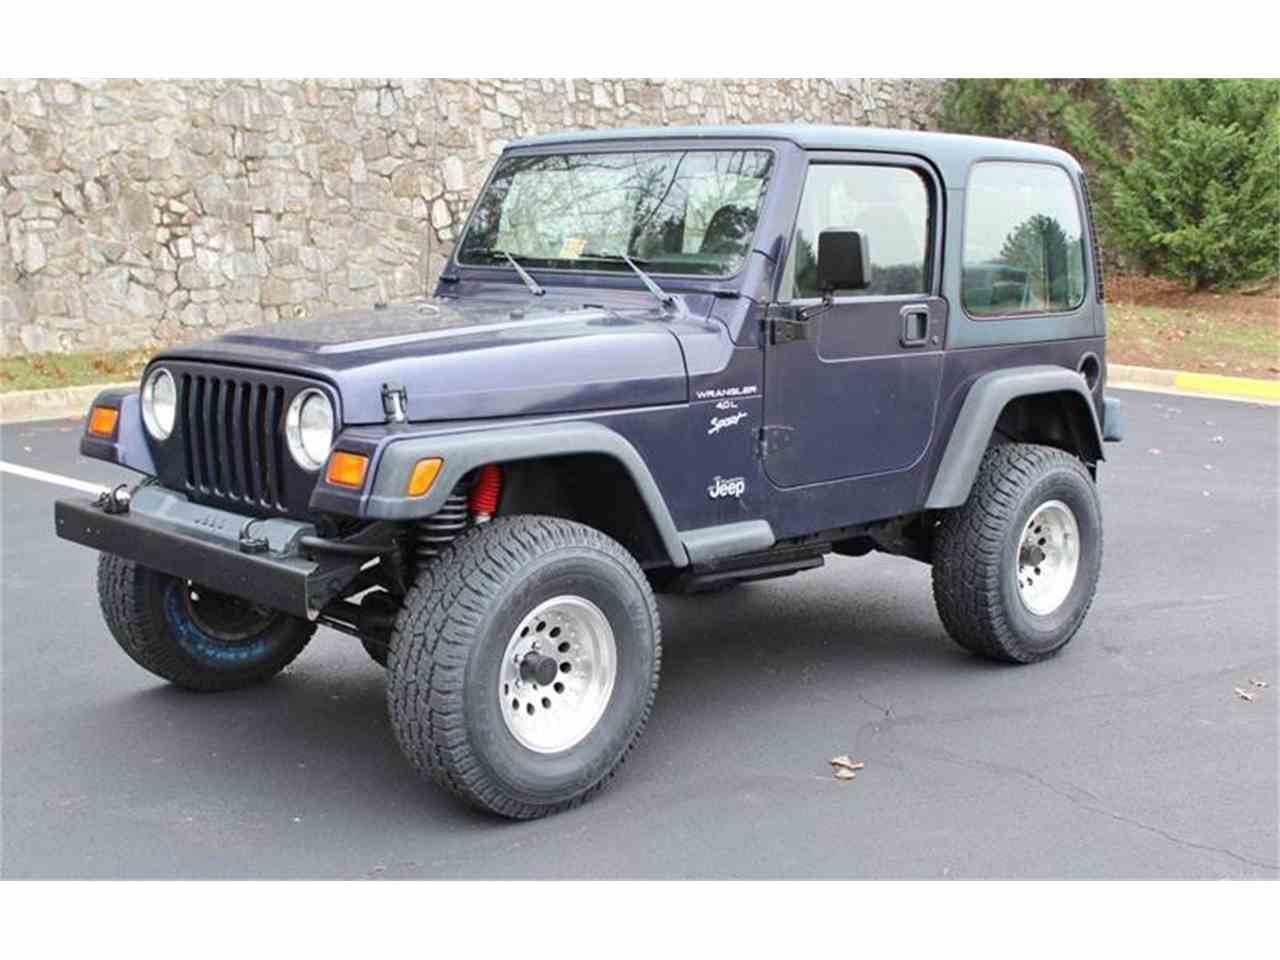 1999 Jeep Wrangler for Sale | ClassicCars.com | CC-932352